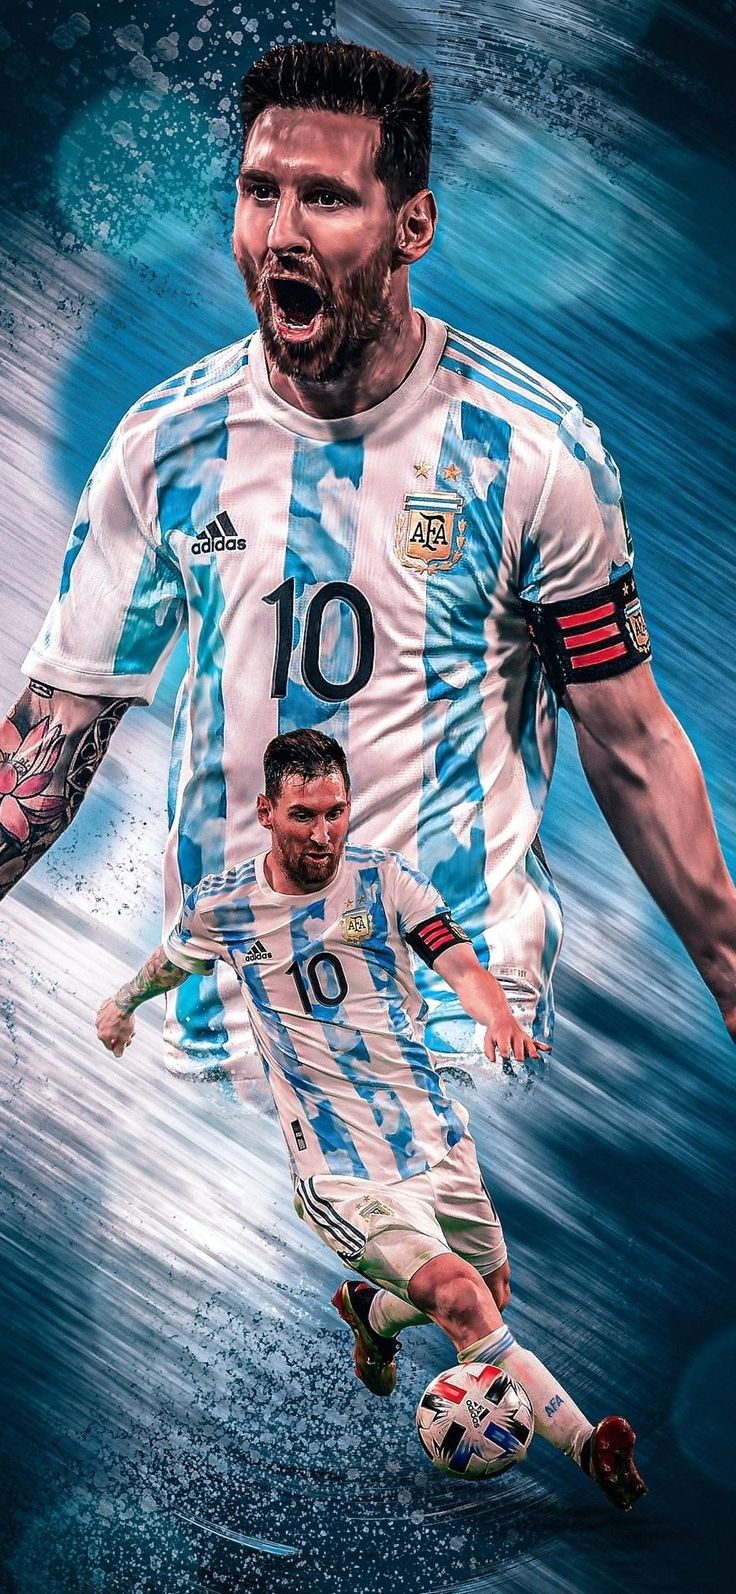 Cảm nhận sự tuyệt vời và tài năng không thể bàn cãi của Lionel Messi thông qua những hình ảnh đương đại và nghệ thuật. Xem ảnh để thấy sự khác biệt trong cách anh ta điều khiển quả bóng.